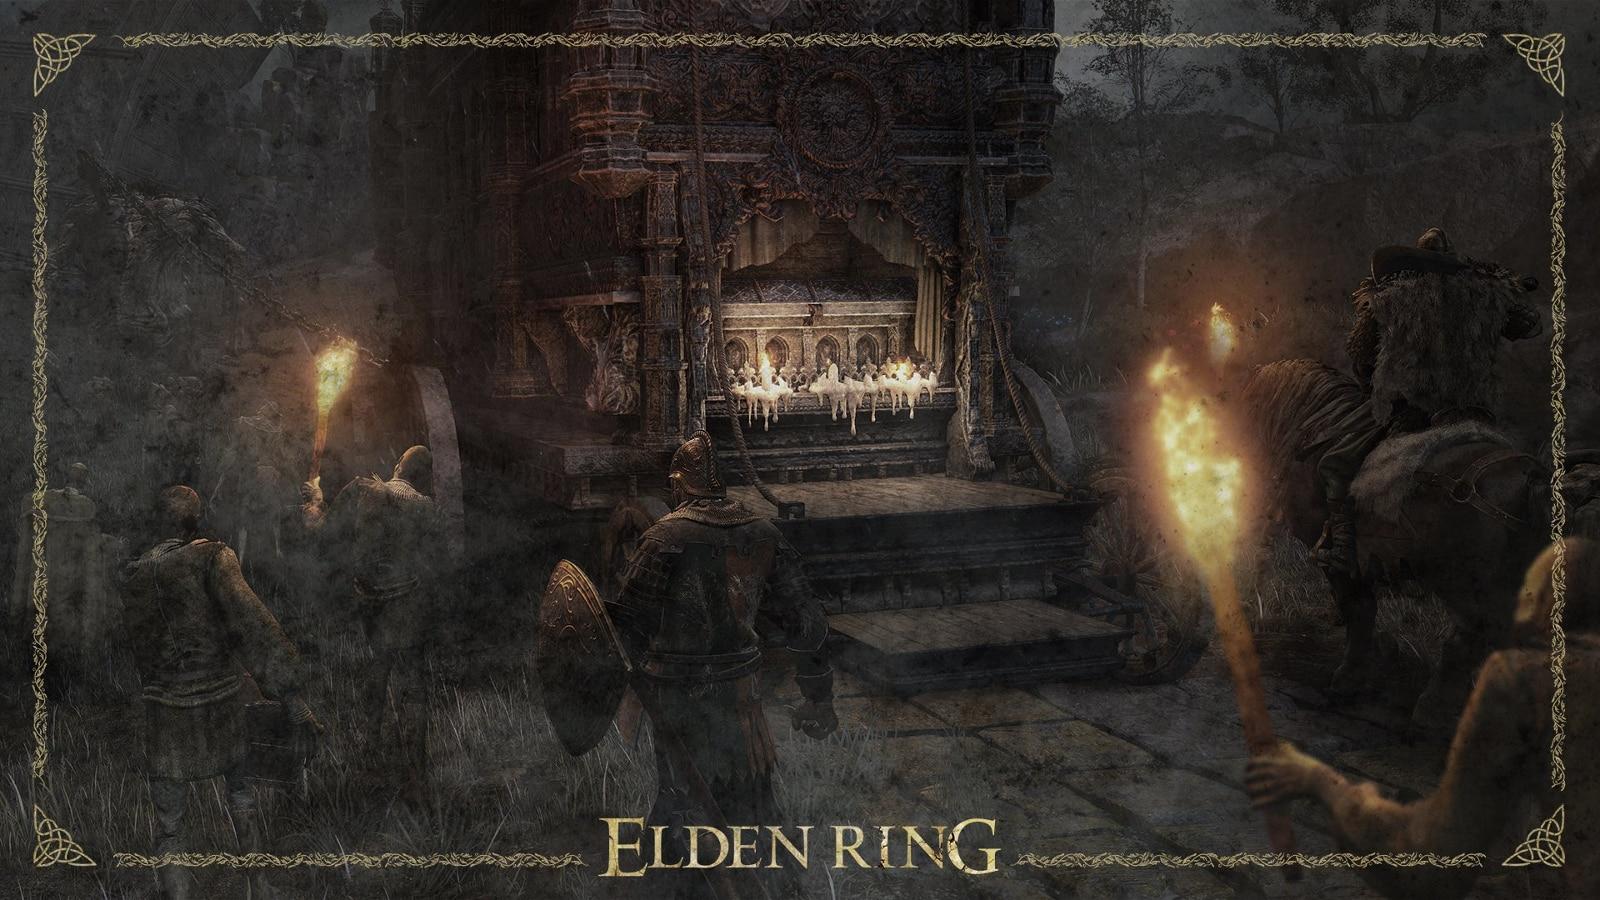 The best Elden Ring builds